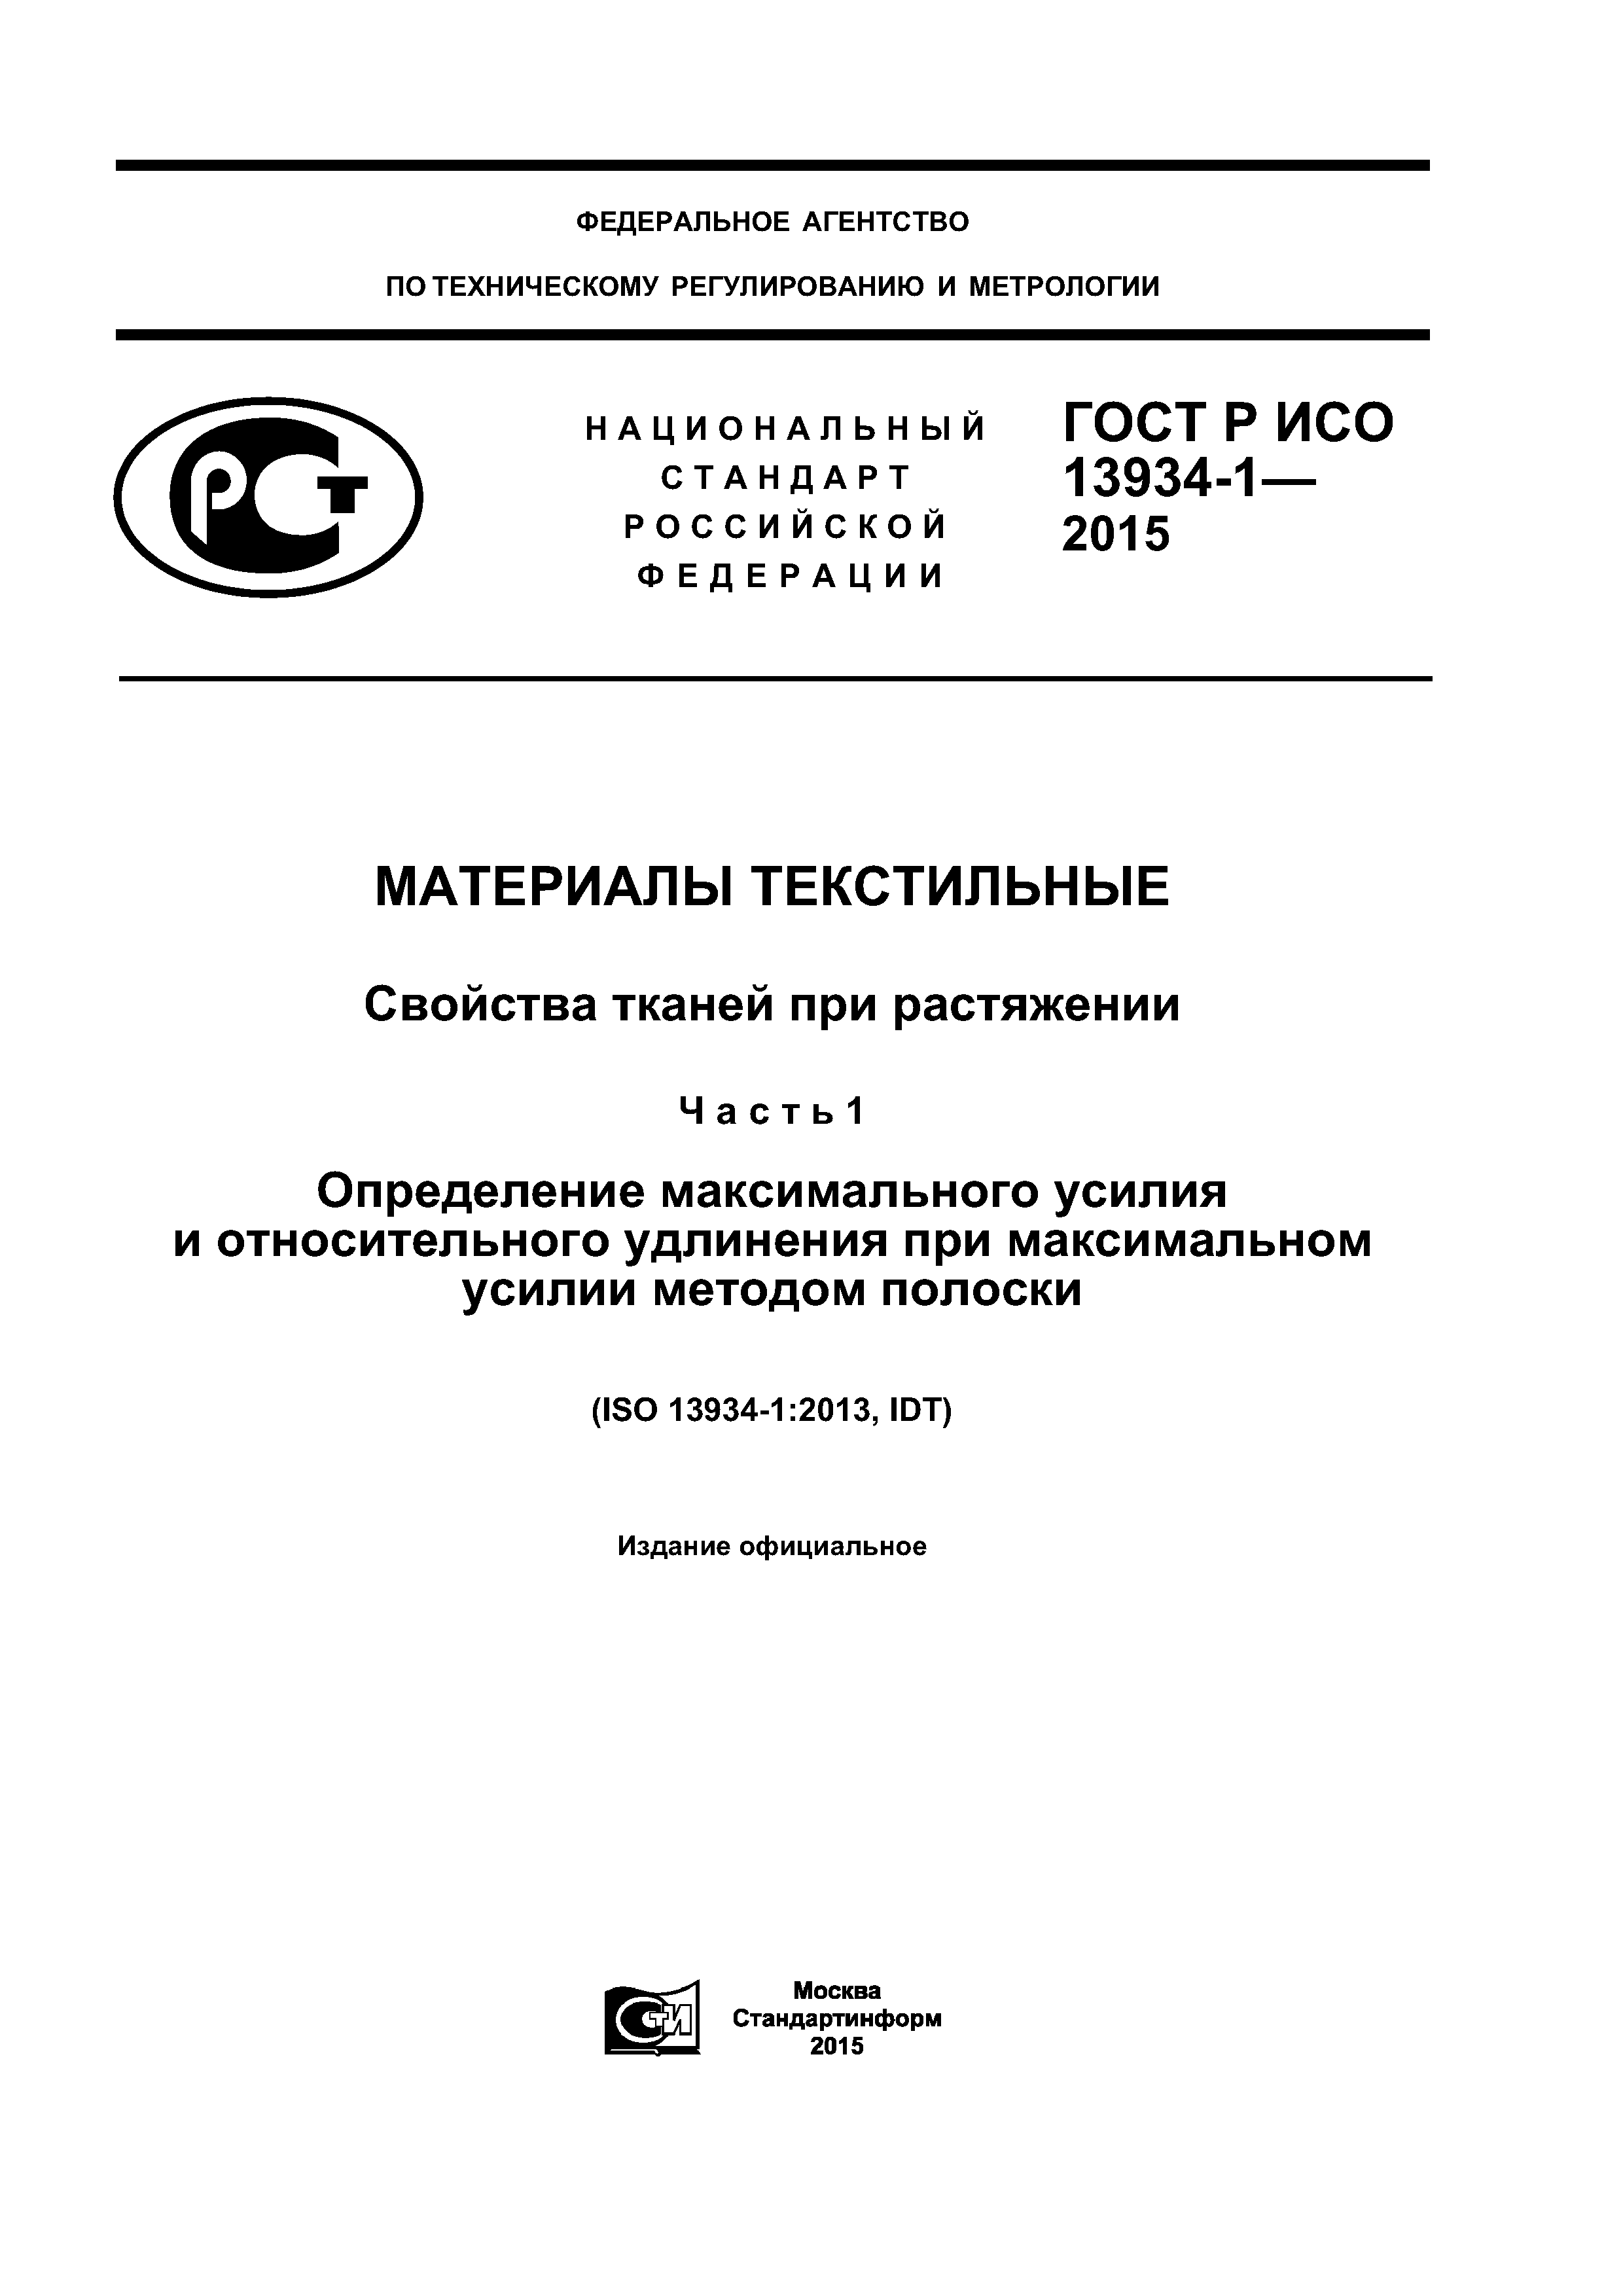 ГОСТ Р ИСО 13934-1-2015